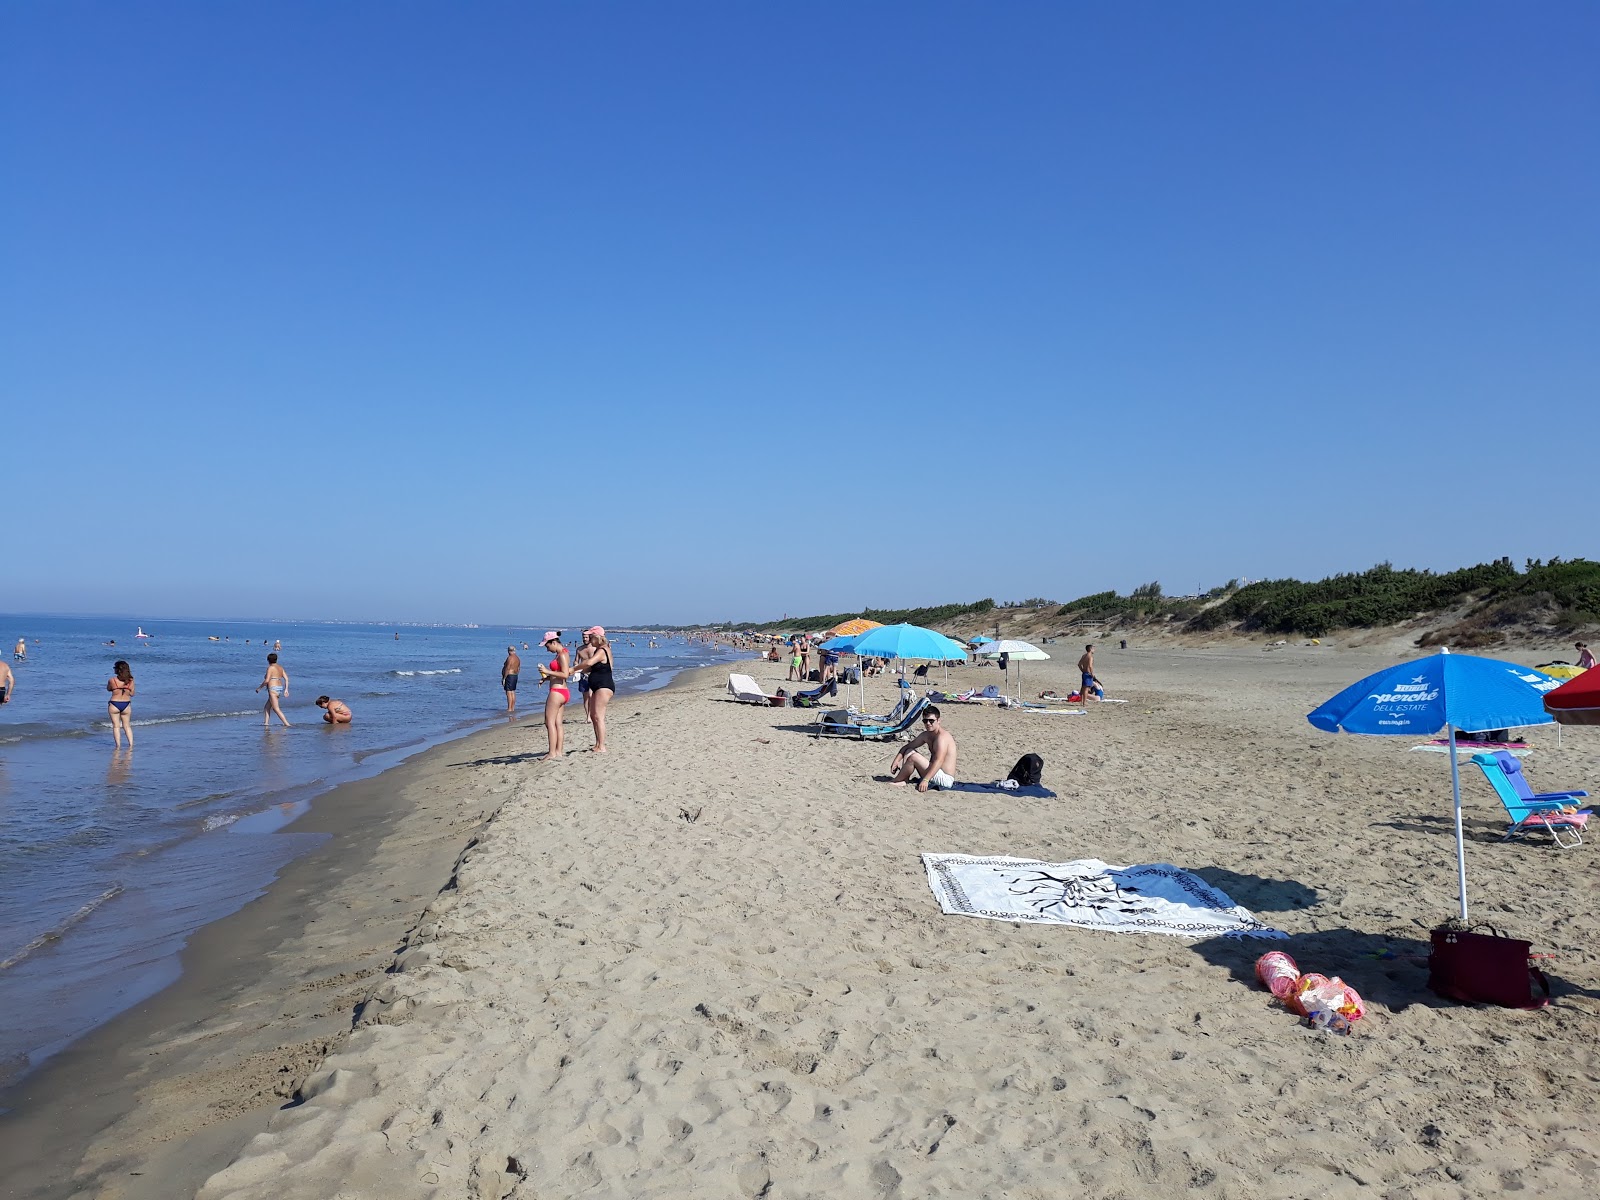 Foto av Spiaggia Sabaudia med lång rak strand